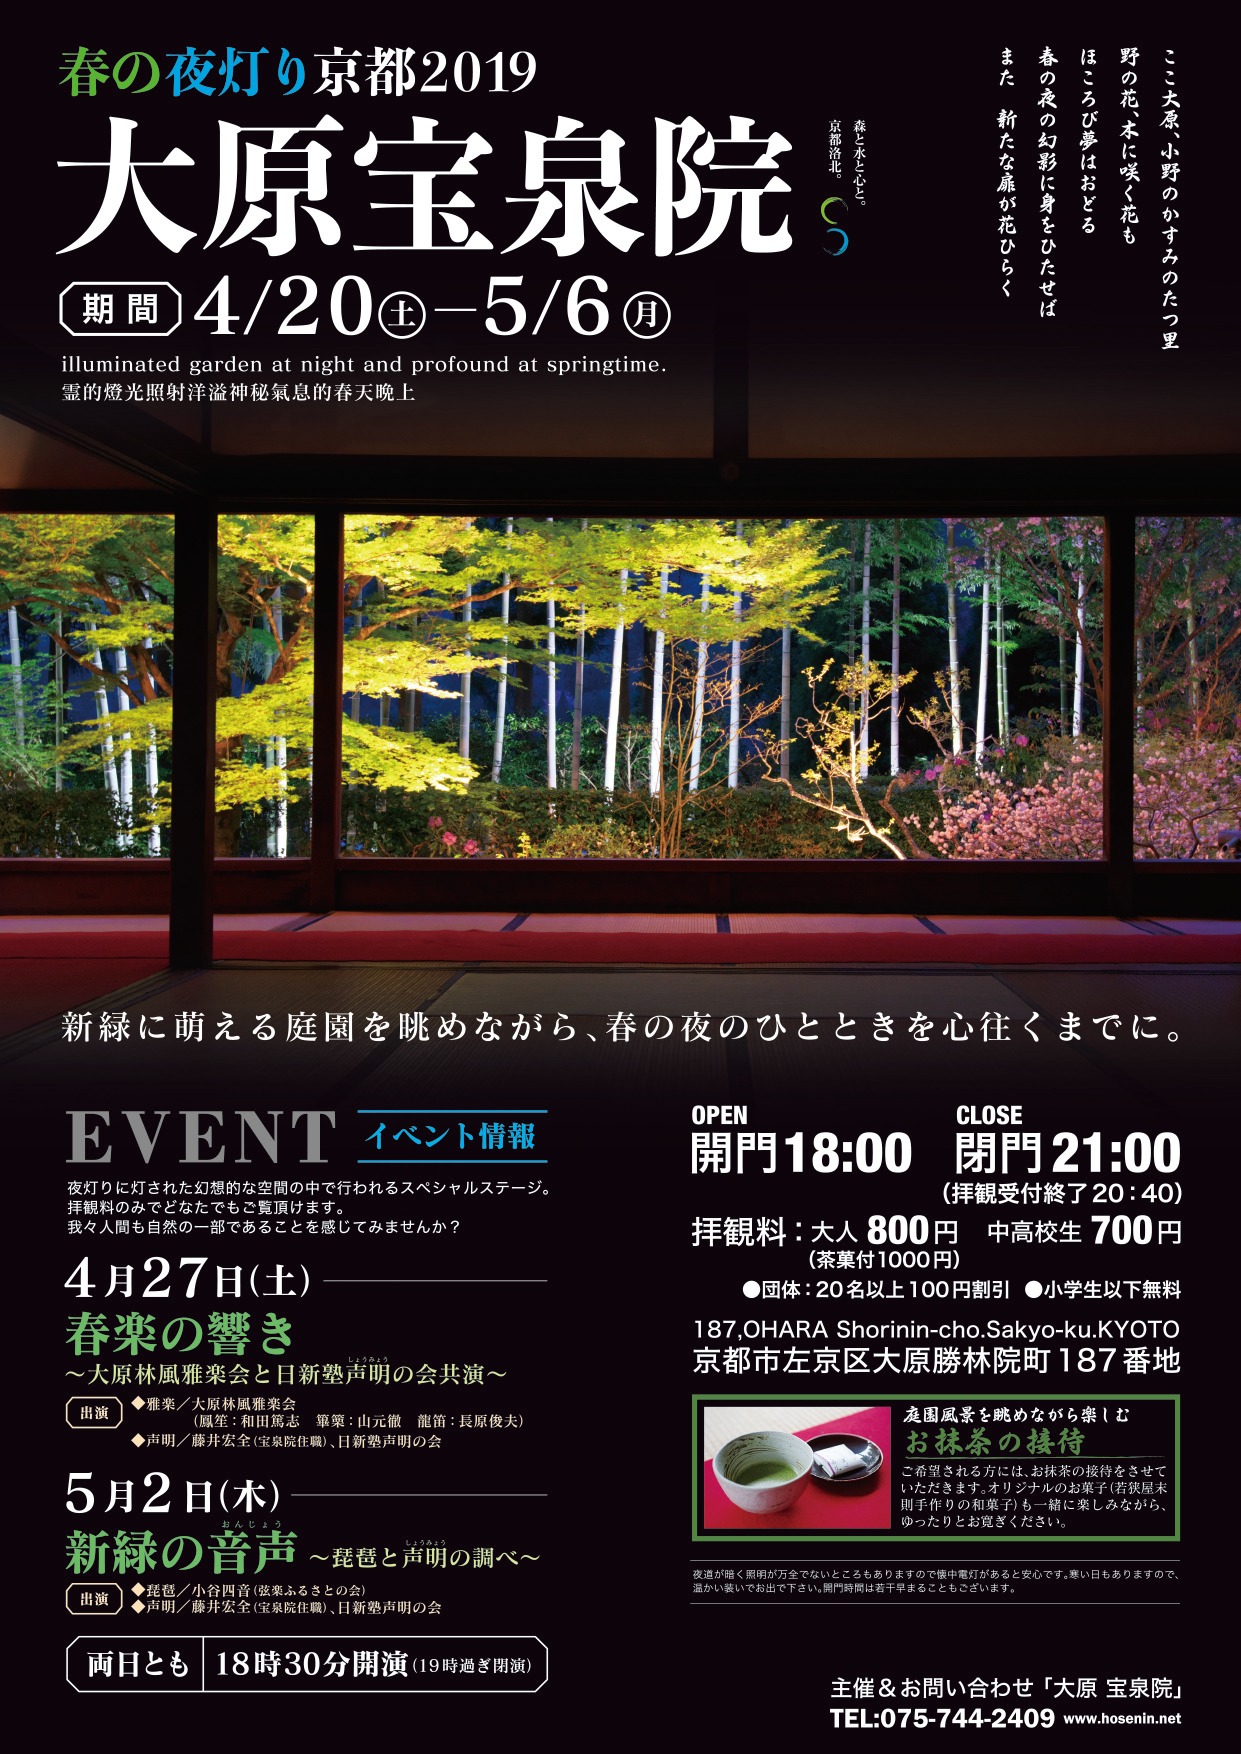 【2019】宝泉院 春のライトアップのお知らせ（4/20〜5/6）